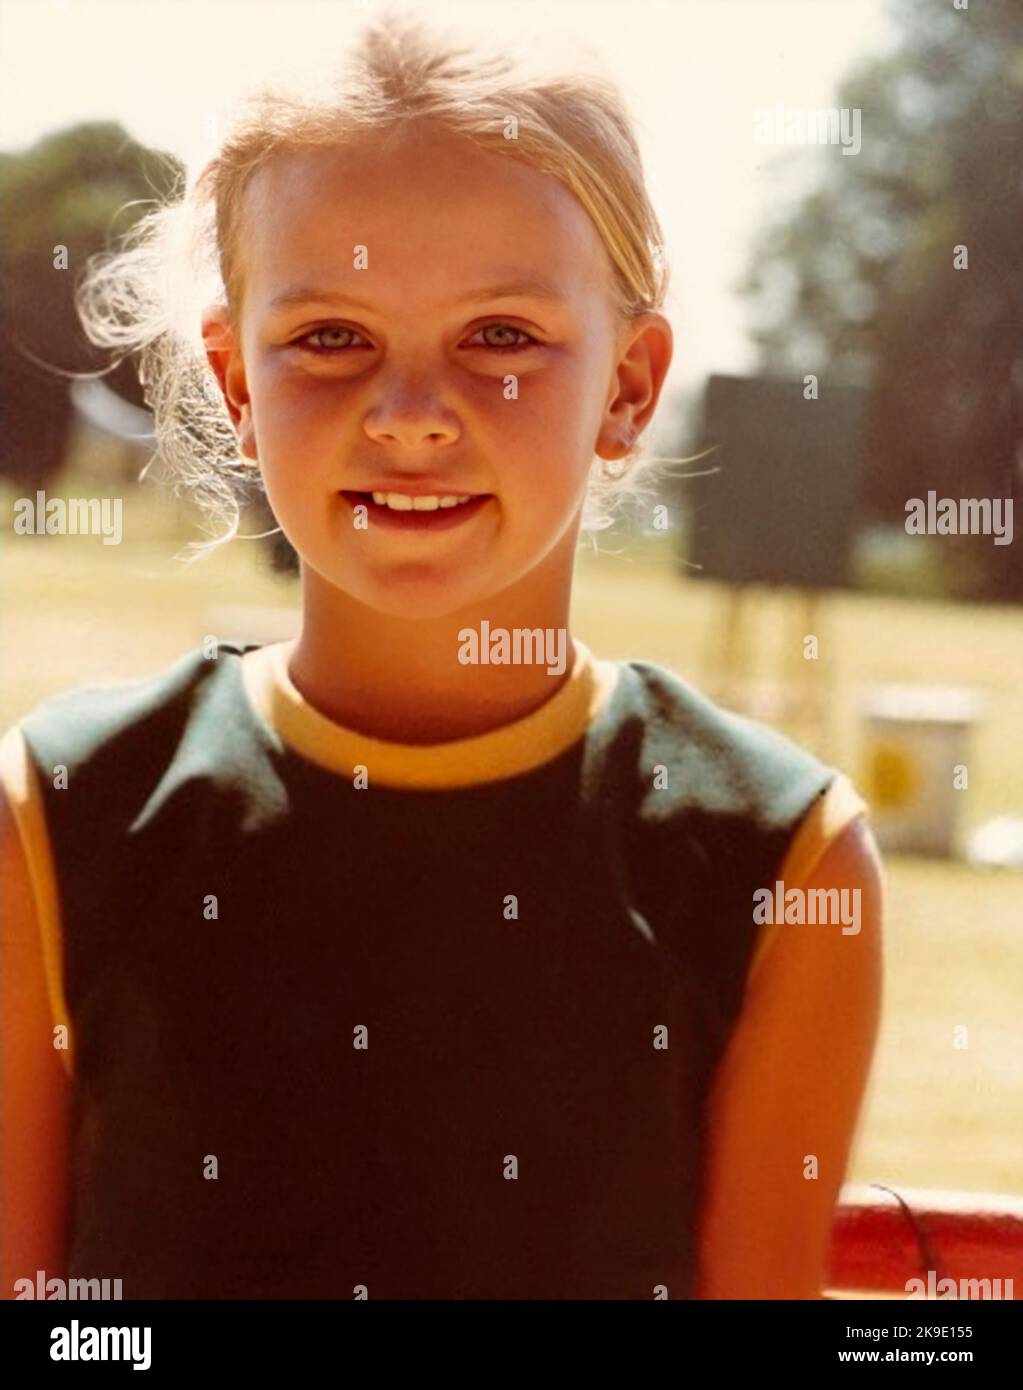 1984, USA: Die gefeierte amerikanische Schauspielerin CHARLIZE THERON ( geboren am 7. august 1975), als ein junges Mädchen im Alter von 9 Jahren in der Schule war. Unbekannter Fotograf .- GESCHICHTE - FOTO STORICHE - ATTRICE - FILM - KINO - personalità da da giovane giovani - da Bambina Bambini bambino - Persönlichkeit Persönlichkeiten, als jung war - SEX SYMBOL - blond - bionda - Lächeln - sorriso - GESCHICHTE - FOTO STORICHE --- ARCHIVIO GBB Stockfoto